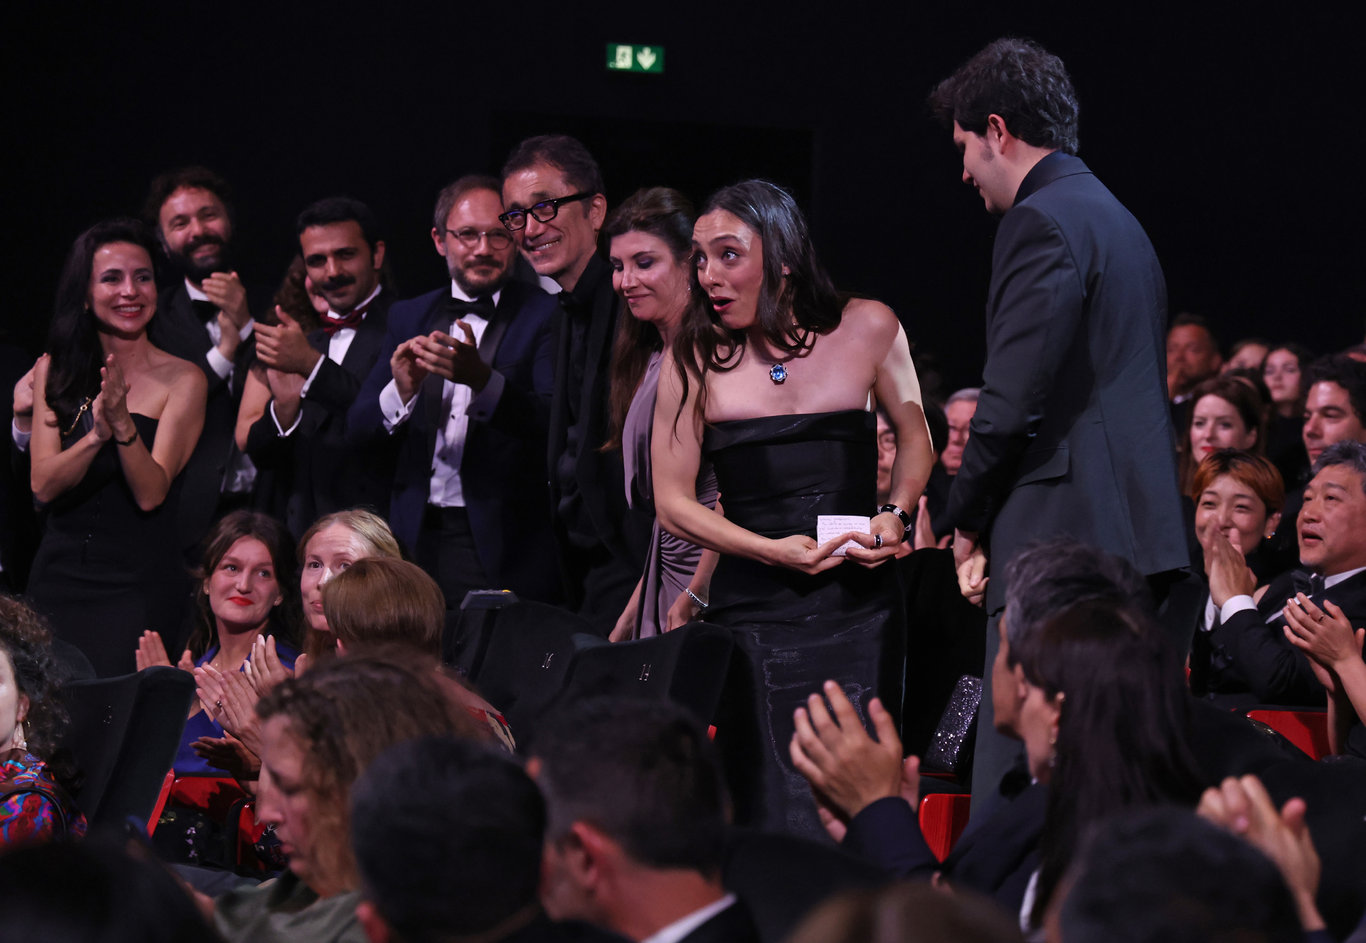 Oyuncu Merve Dizdar, Cannes Film Festivali'nde ödül kazanan ilk Türk kadın olmayı başardı - Magazin Haberleri